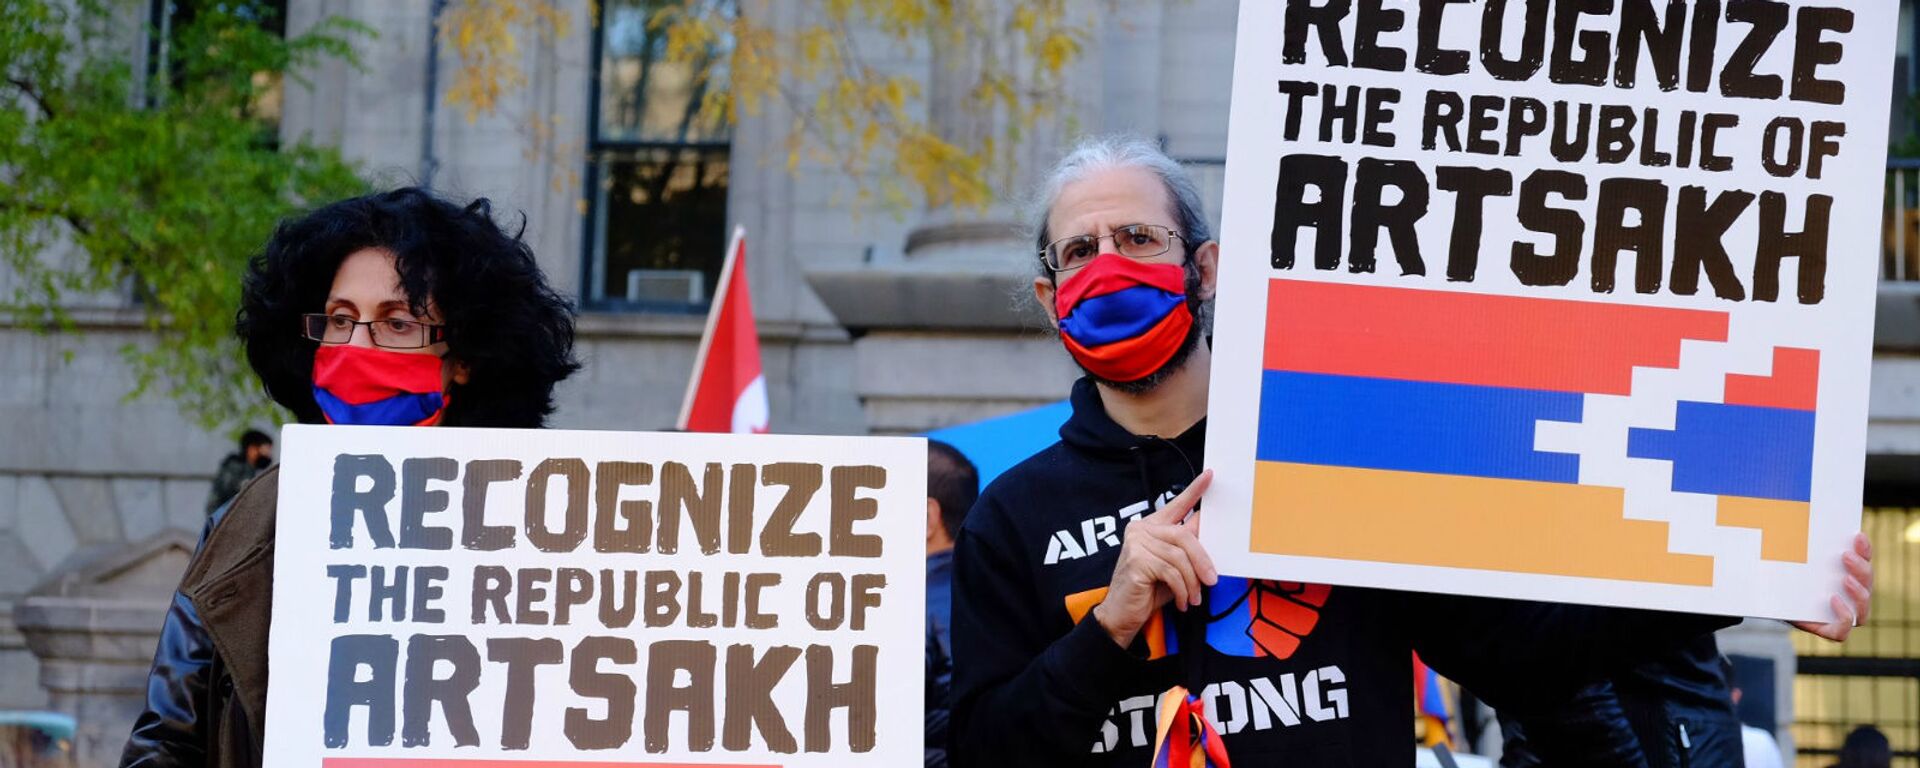 Акции протеста среди диаспоры в разных странах продолжаются - Sputnik Армения, 1920, 24.11.2020